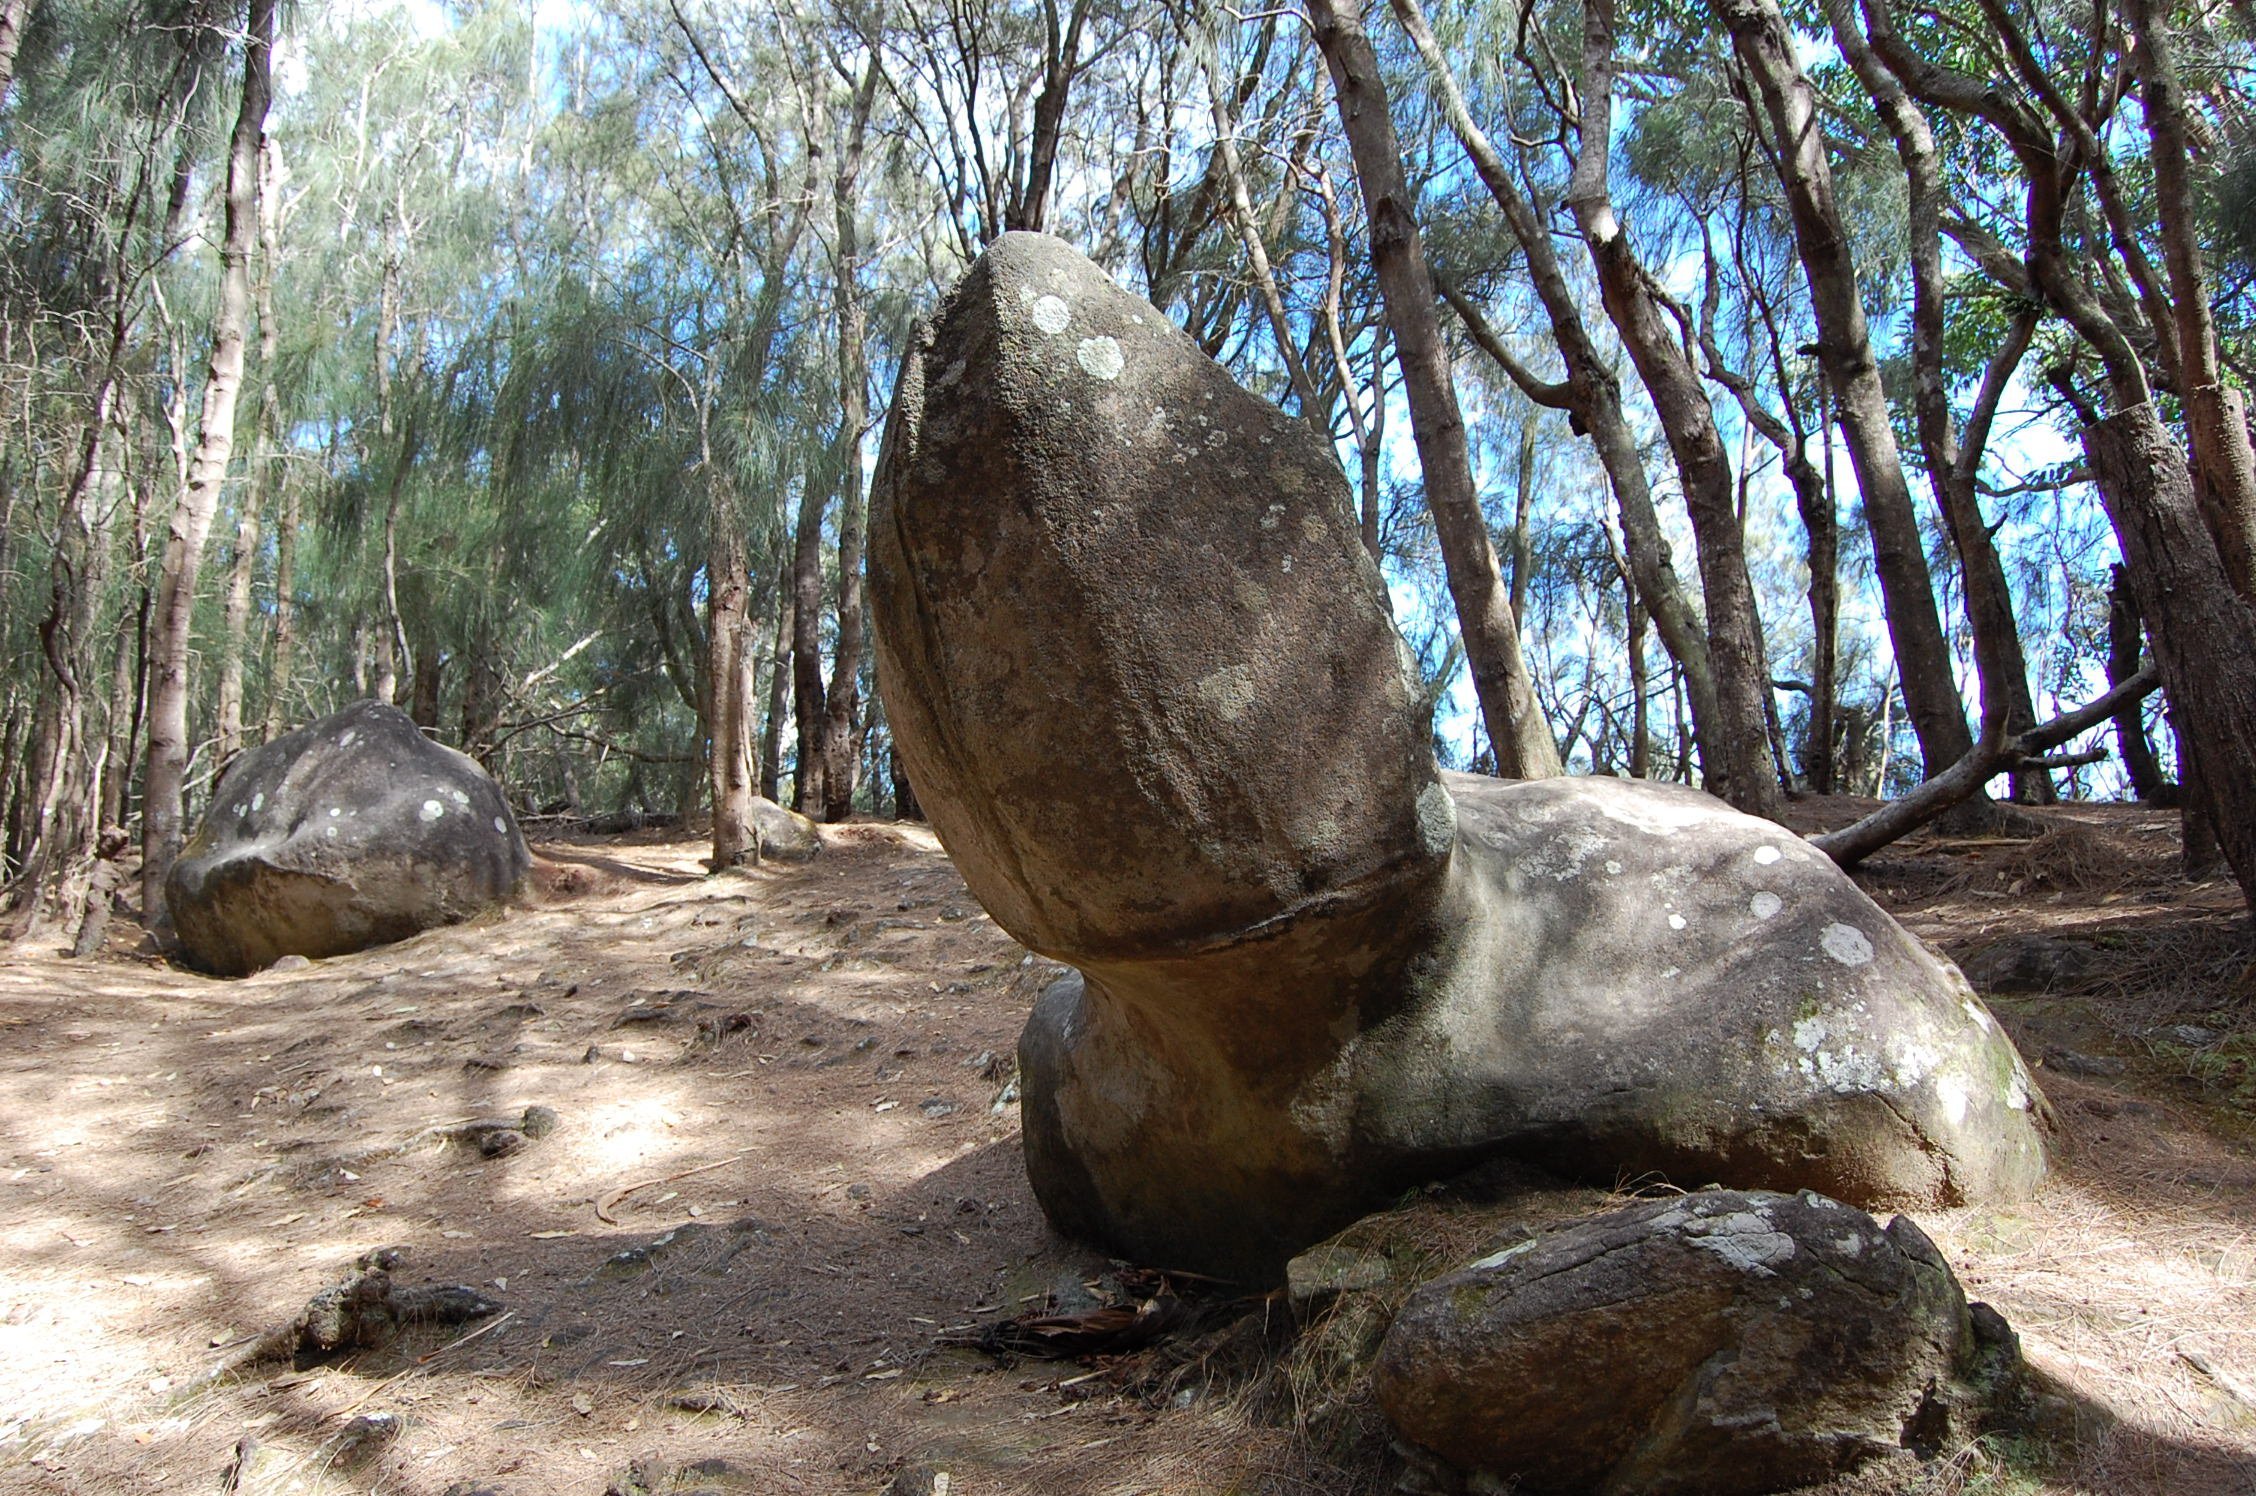 Known as Fertility Rock